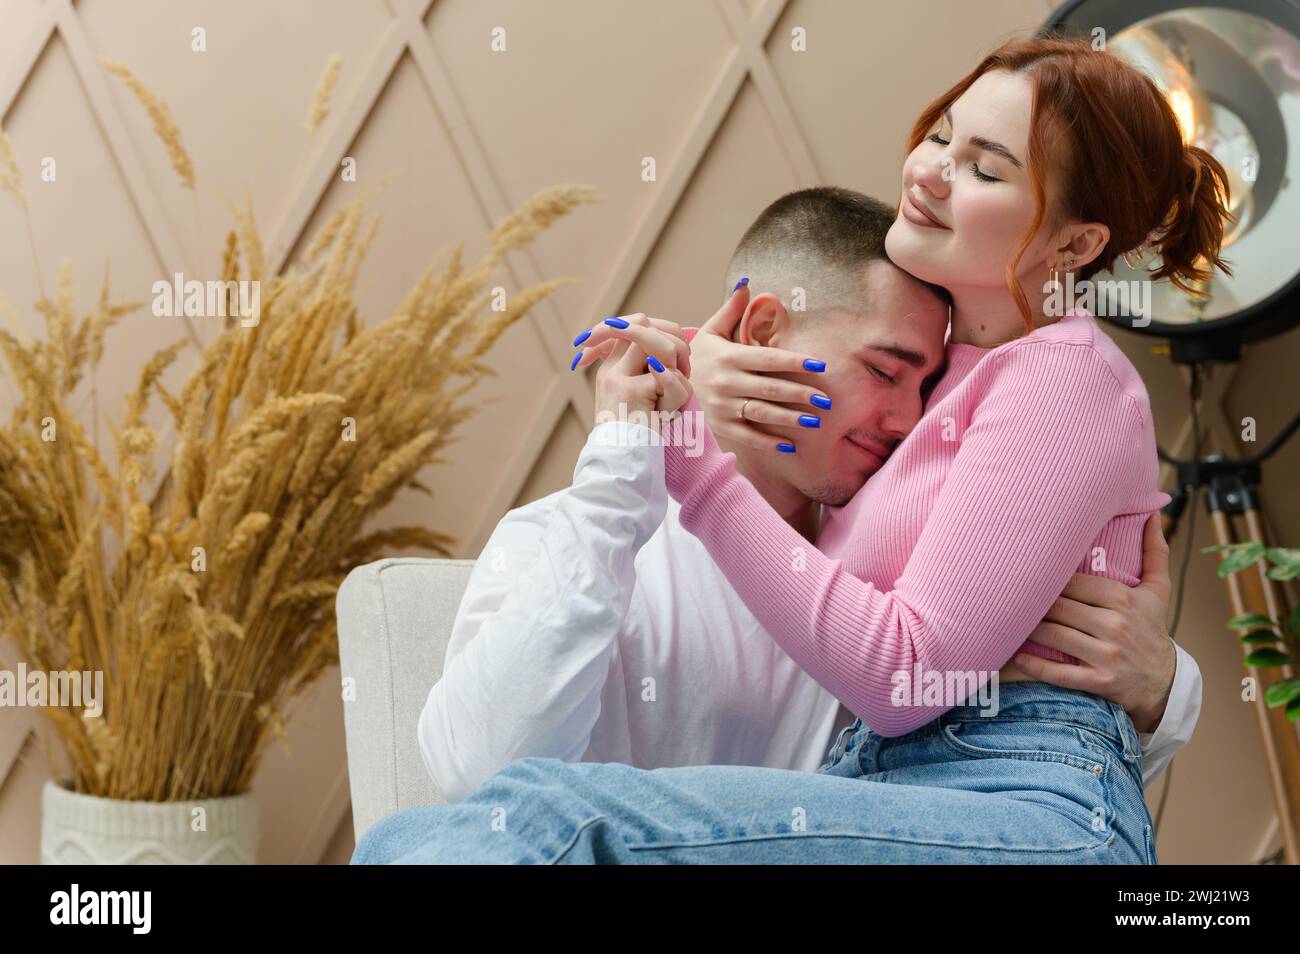 Una giovane coppia romantica si abbraccia mentre si siede su una sedia. Una ragazza si siede in grembo di un uomo. La ragazza spinge la testa dell'uomo sul petto. Foto Stock